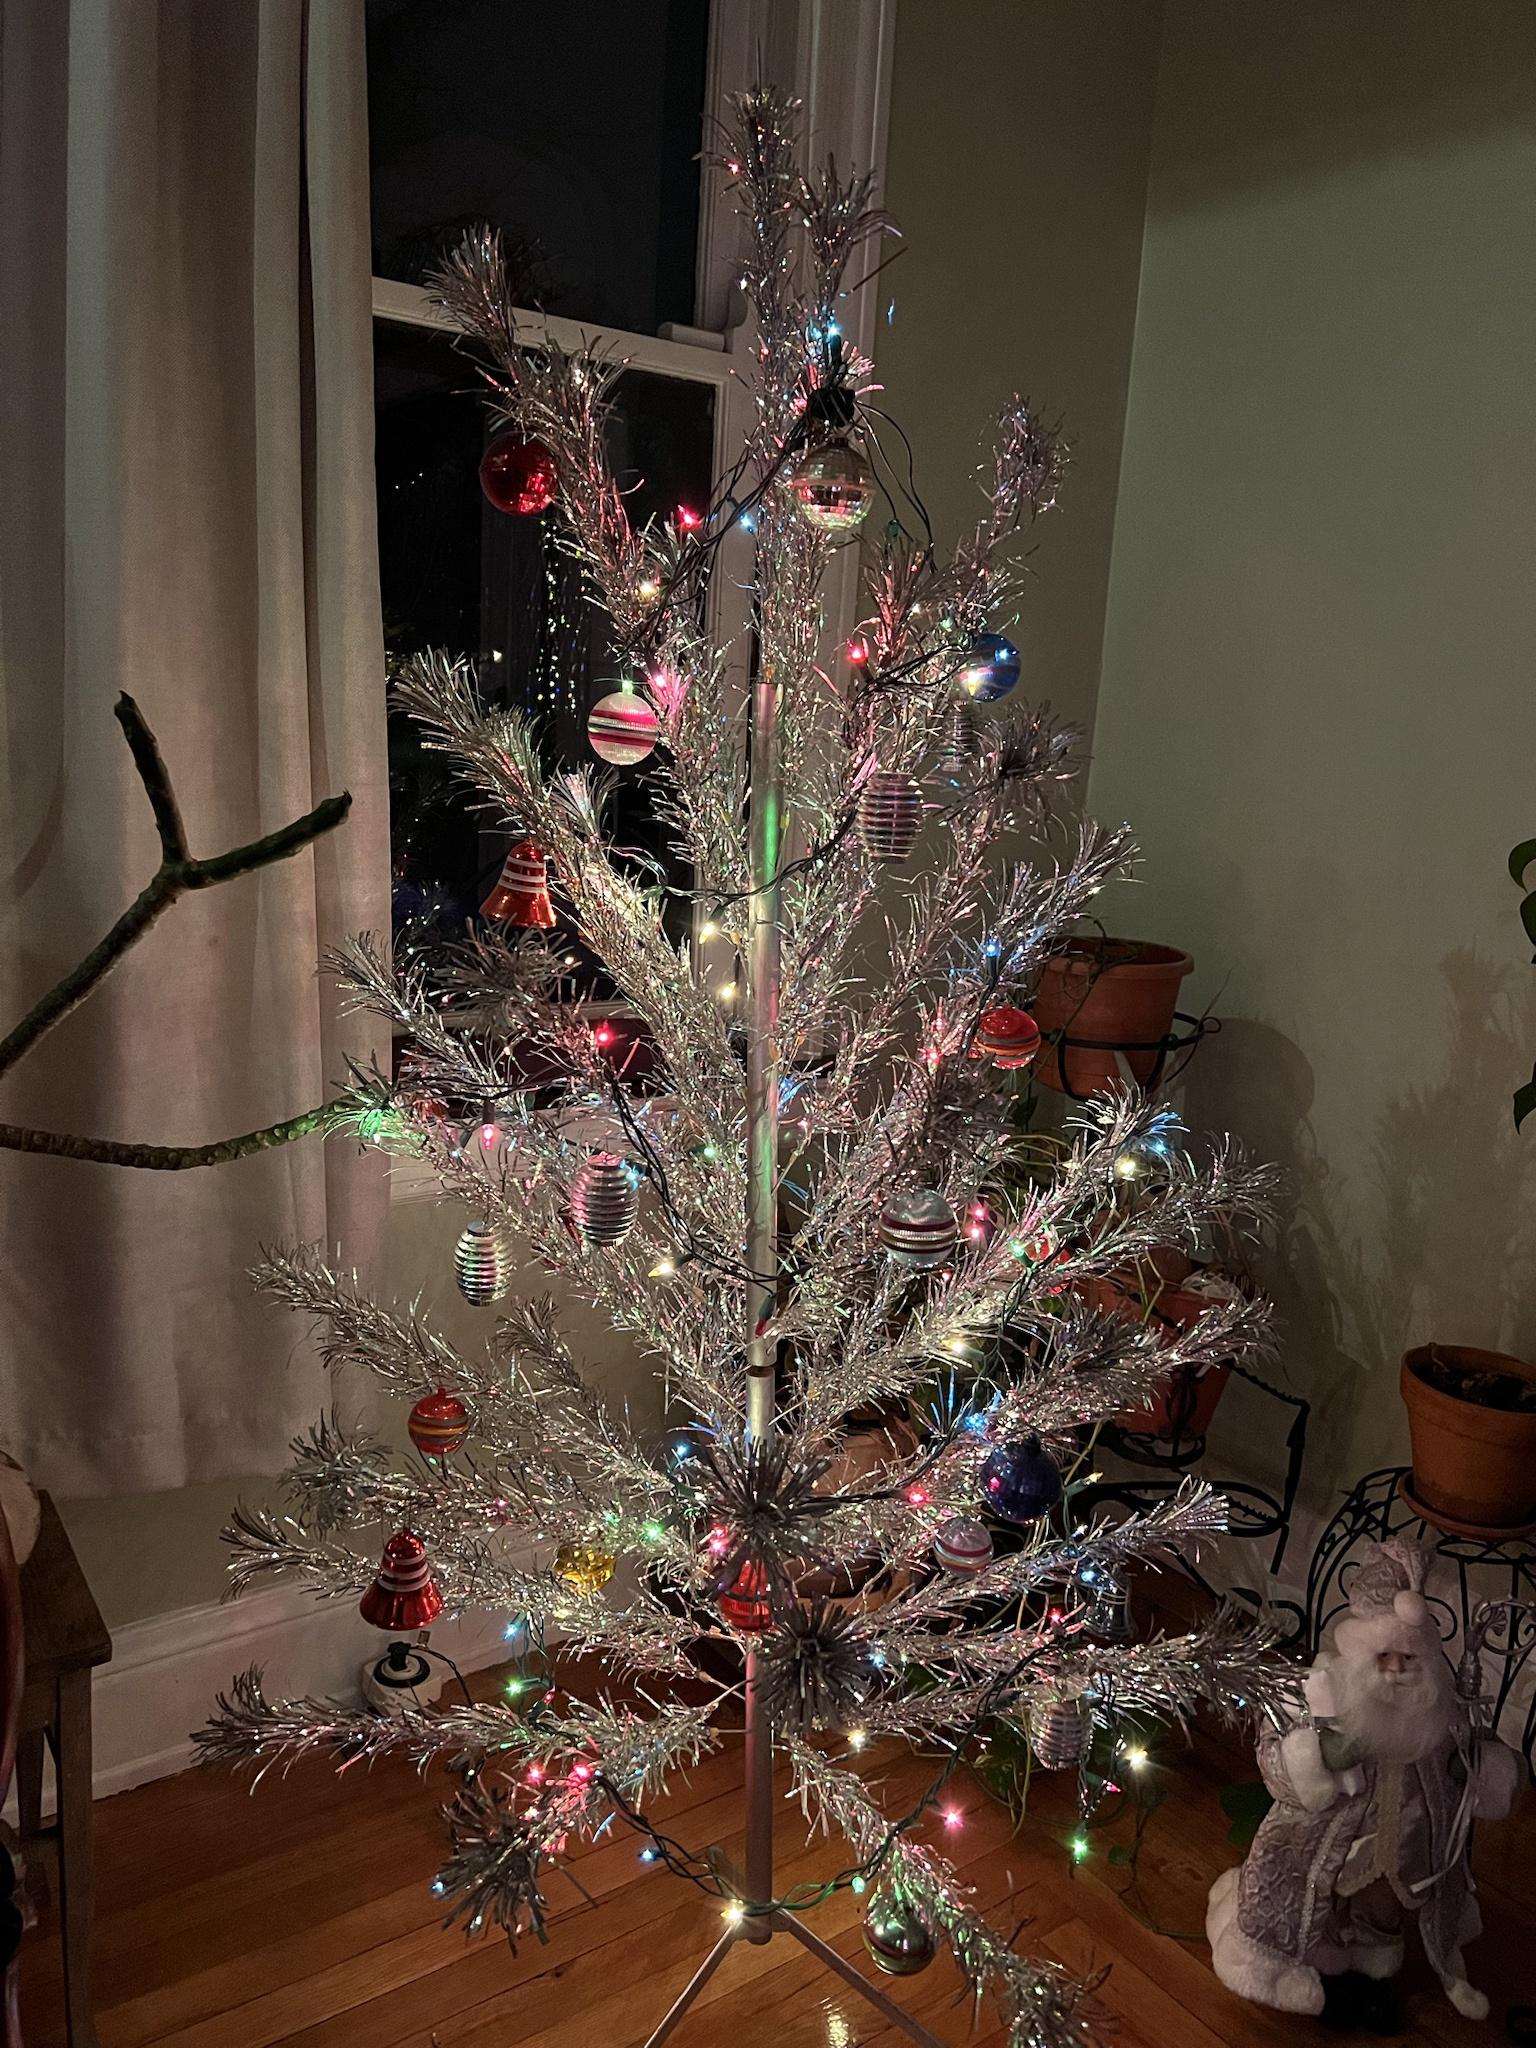 Fifties or 1960s Christmas Tree